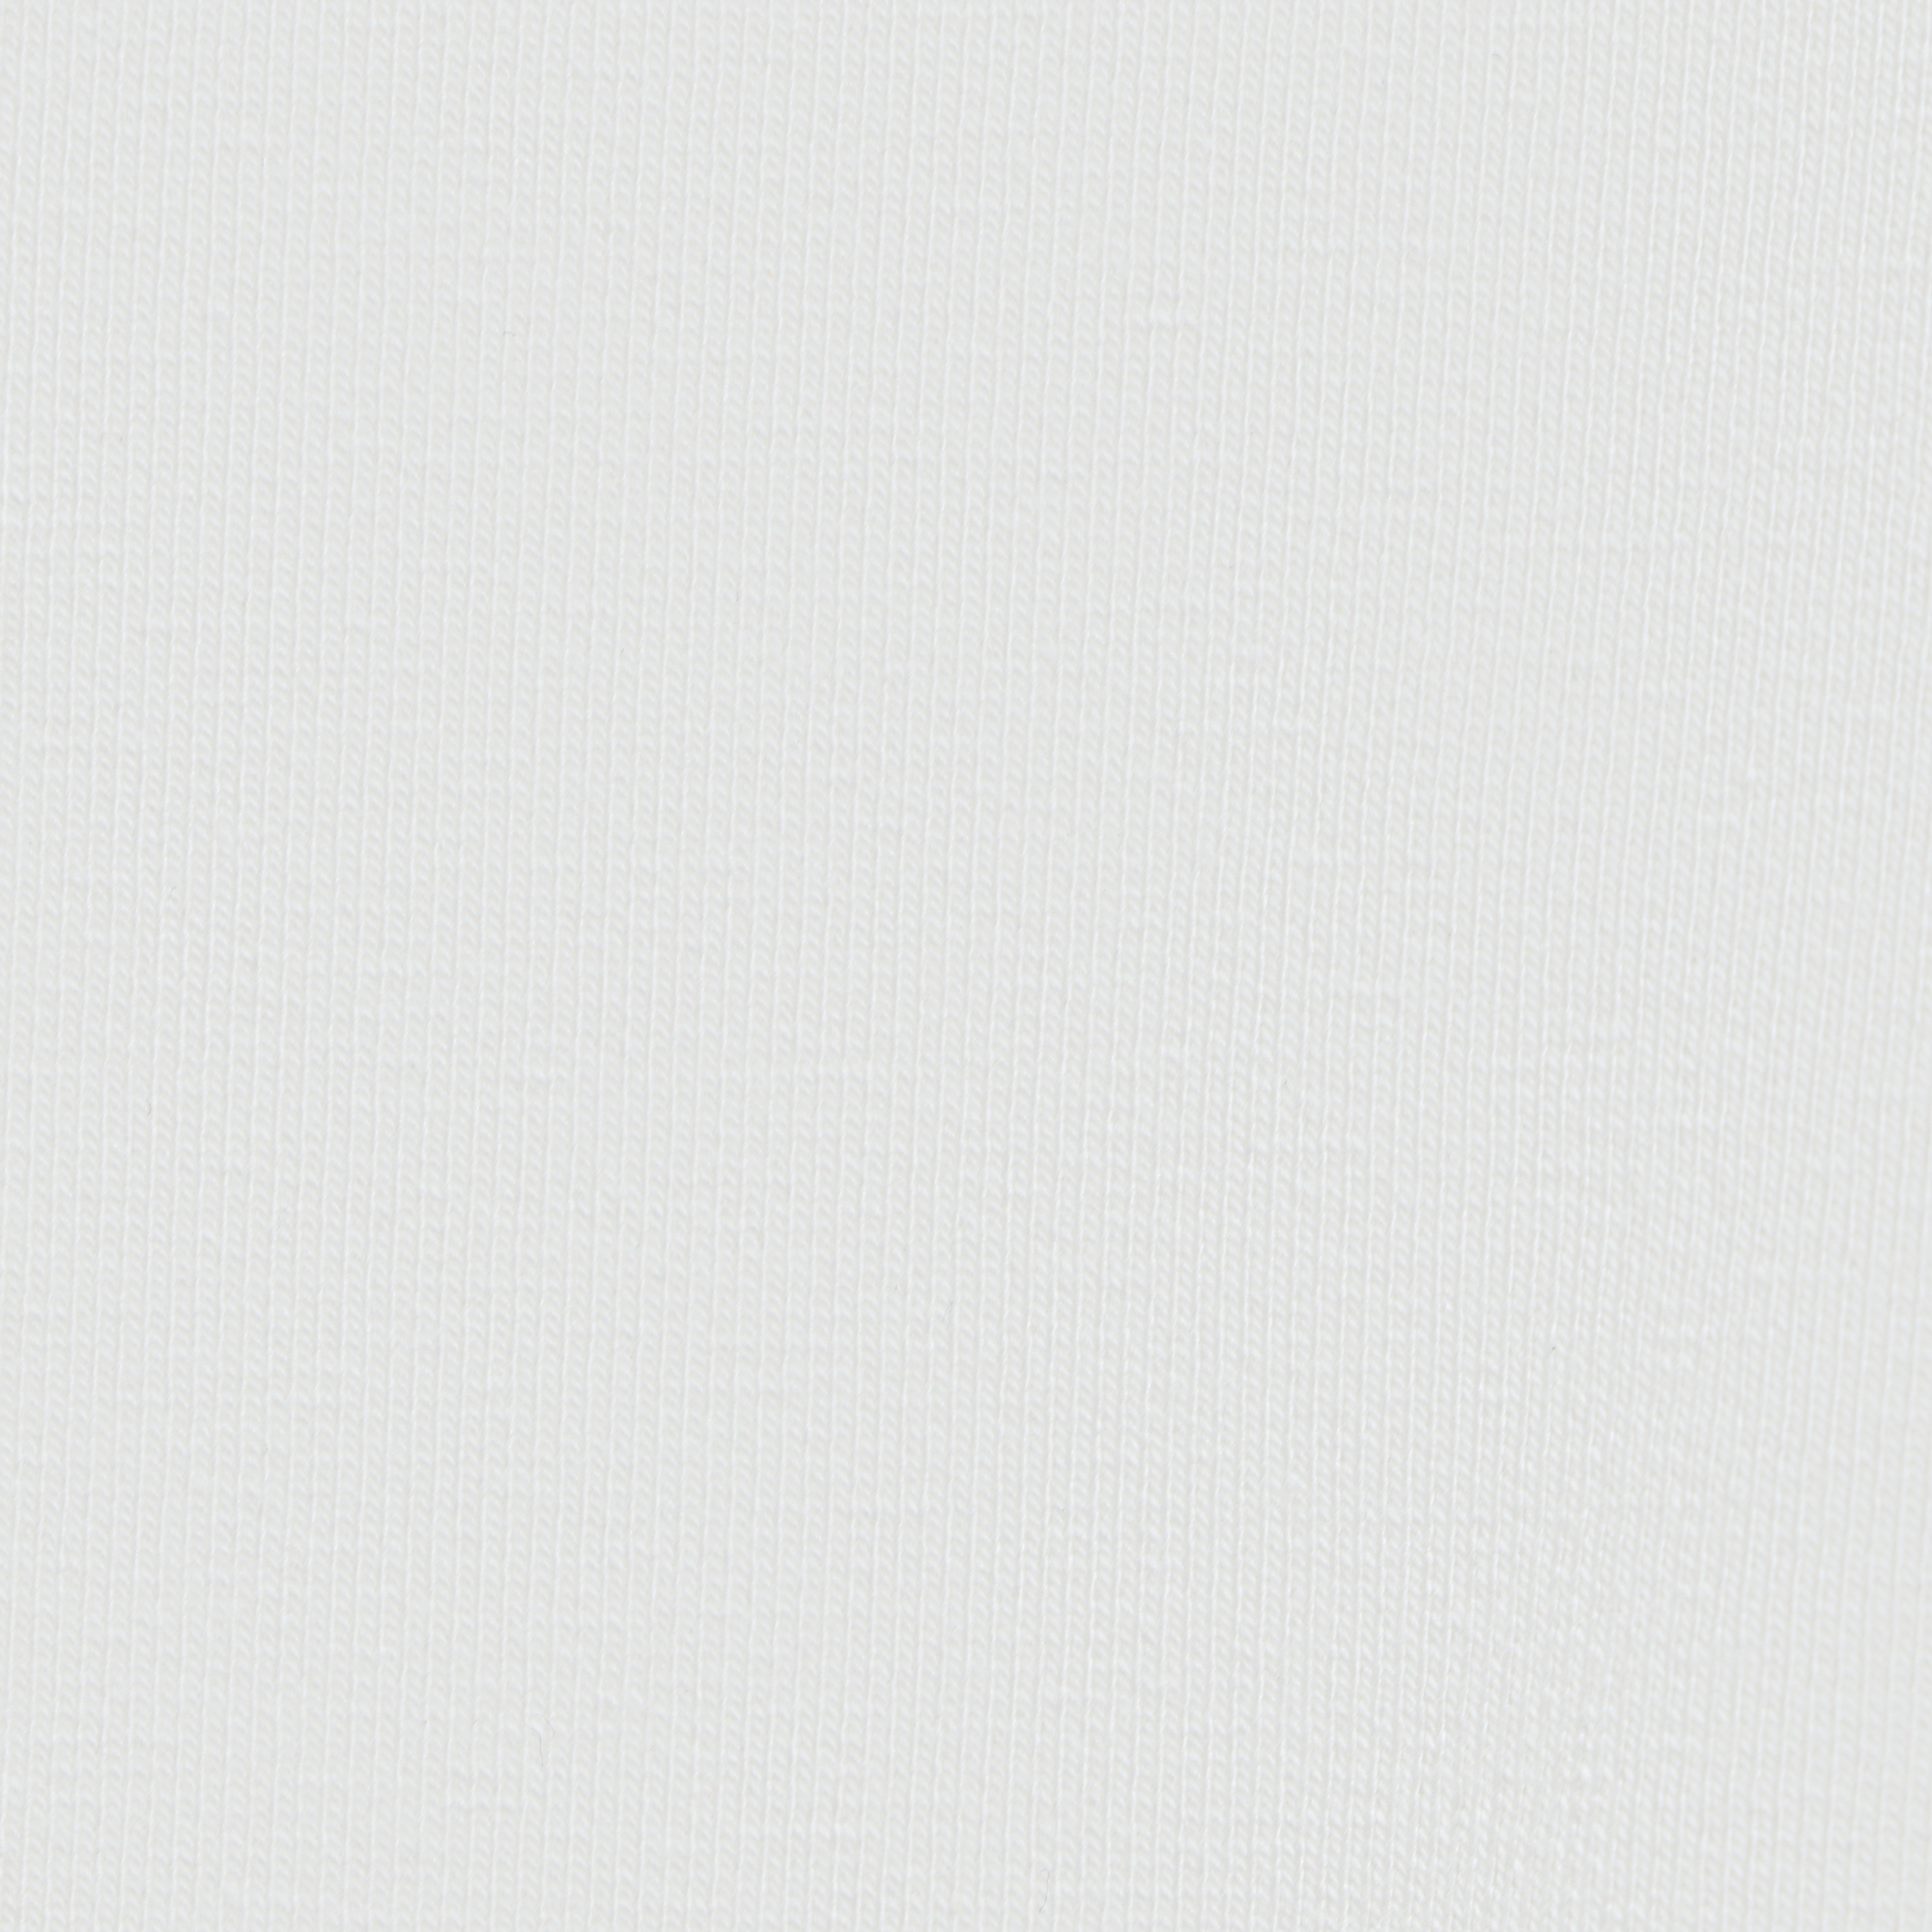 Мужская толстовка Birlik белая с капюшоном, цвет белый, размер L - фото 3